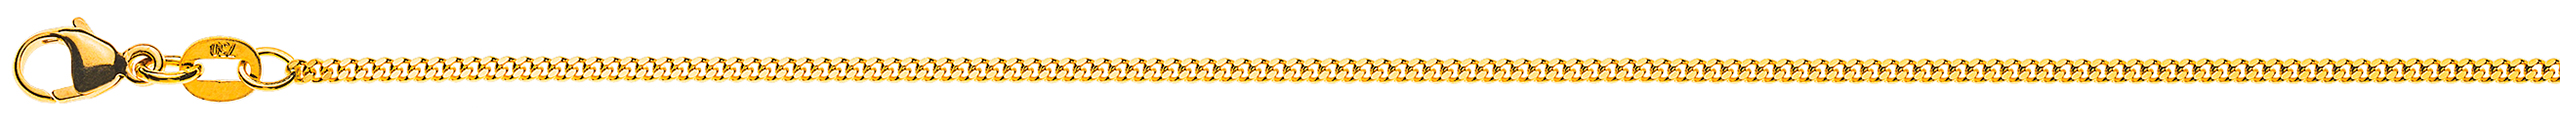 AURONOS Élégance Necklace yellow gold 14K curb chain polished 55cm 1.6mm